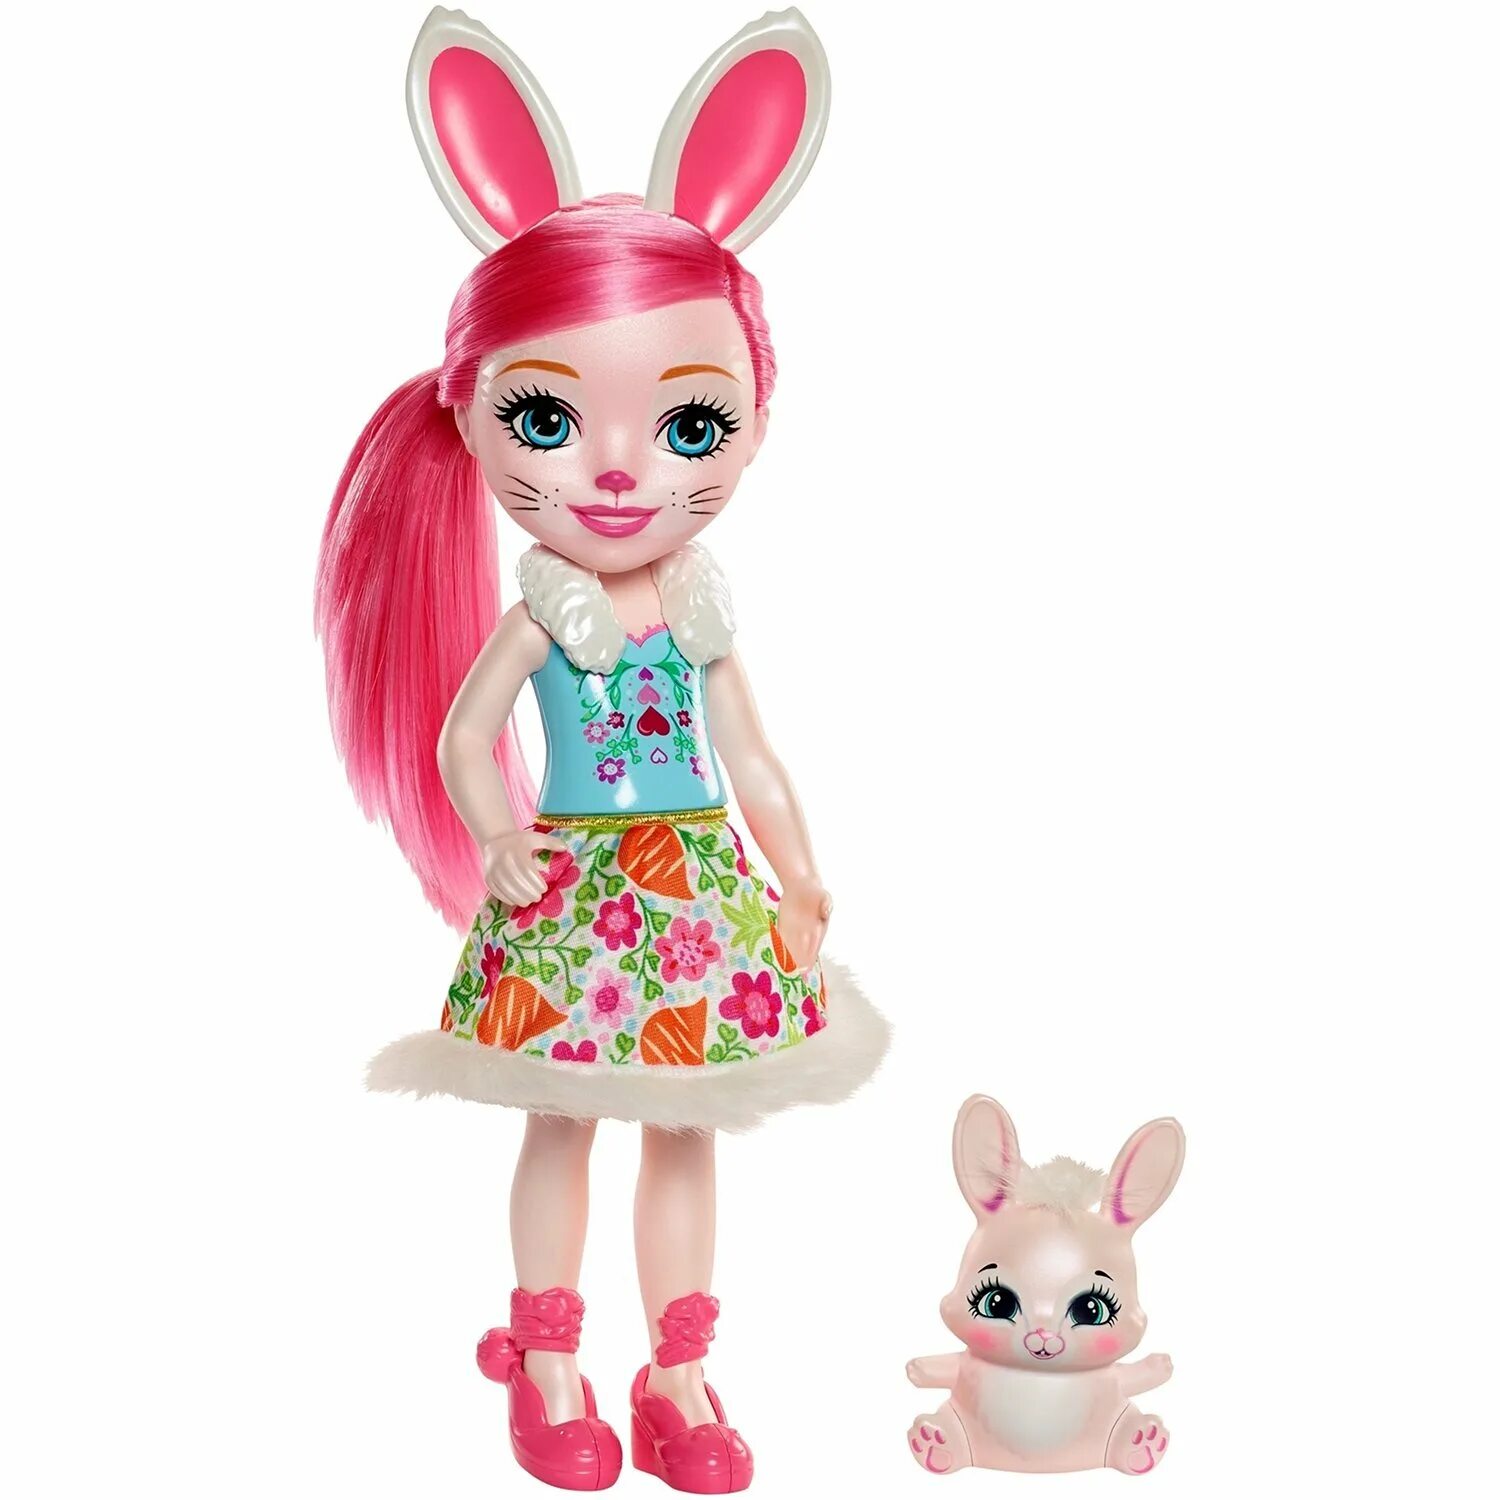 Кукла Enchantimals Bree Bunny. Кукла Энчантималс Бри кроля и Твист. Большая кукла Энчантималс. Кукла Mattel Enchantimals с питомцем.